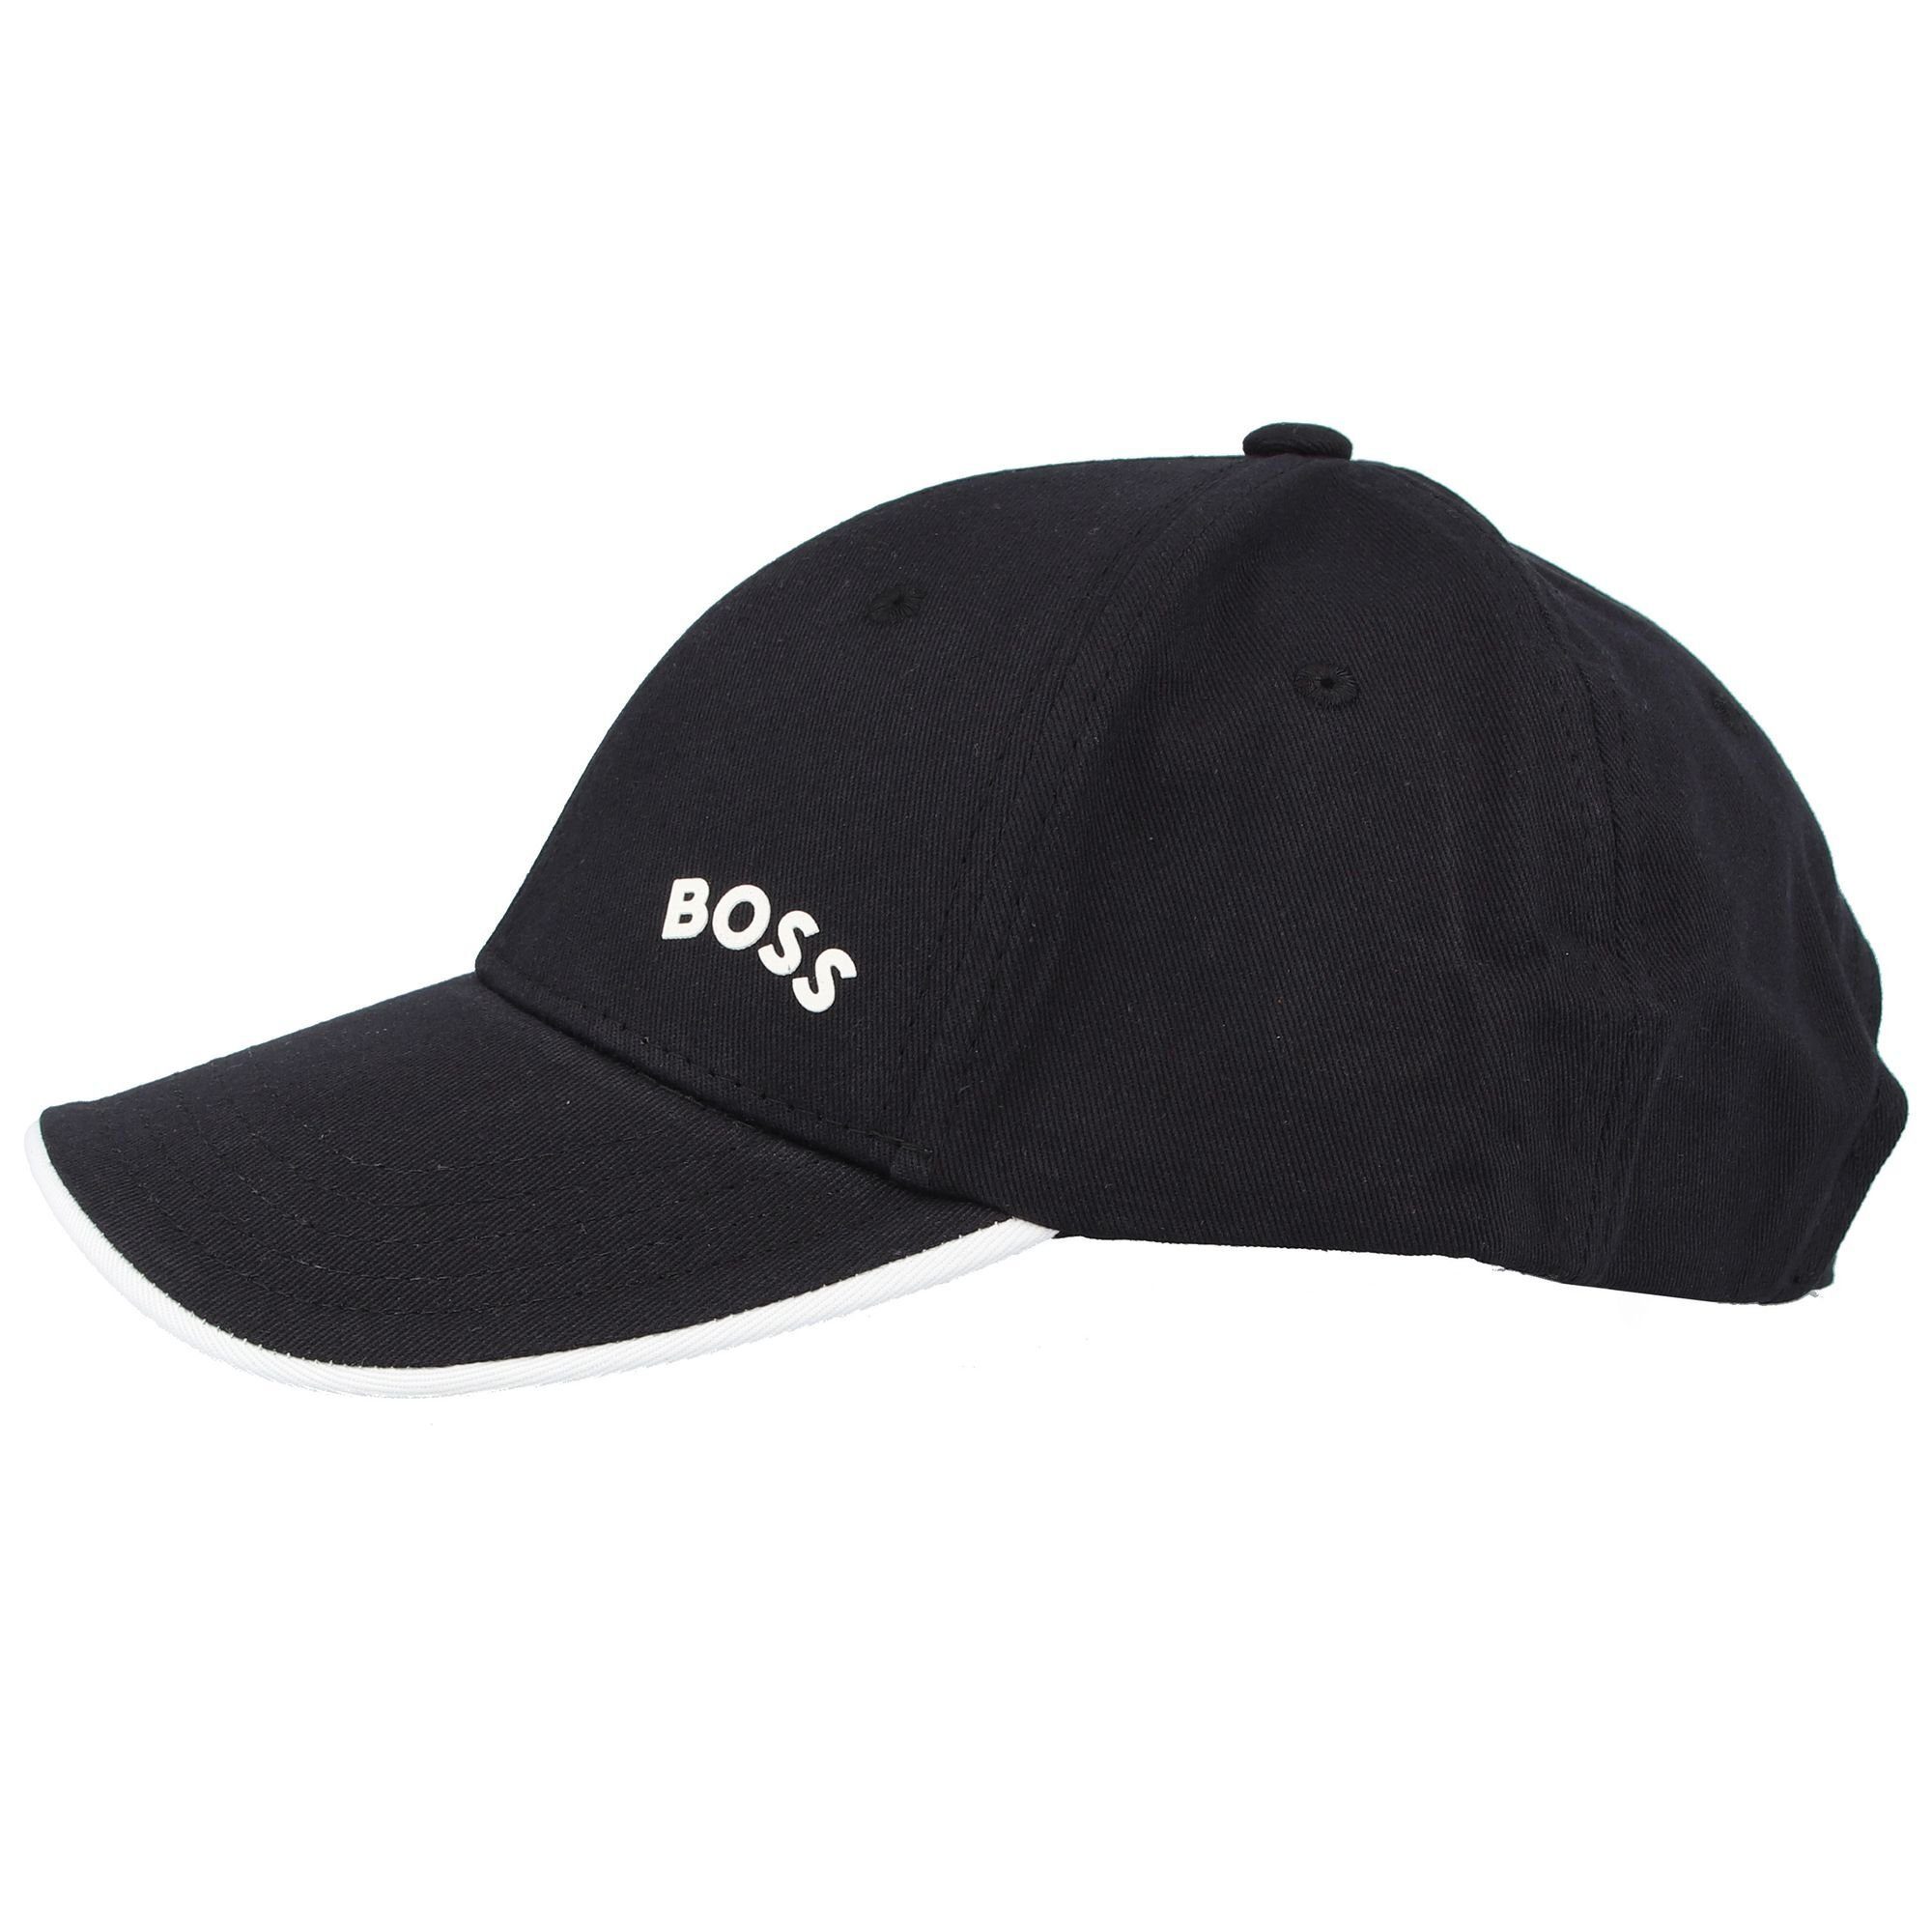 Verkaufen Sie zum niedrigsten Preis! BOSS Baseball Cap Cap-Bold-Curved Material: Baumwolle in 100% Kontrastfarbe, Schirmunterseite